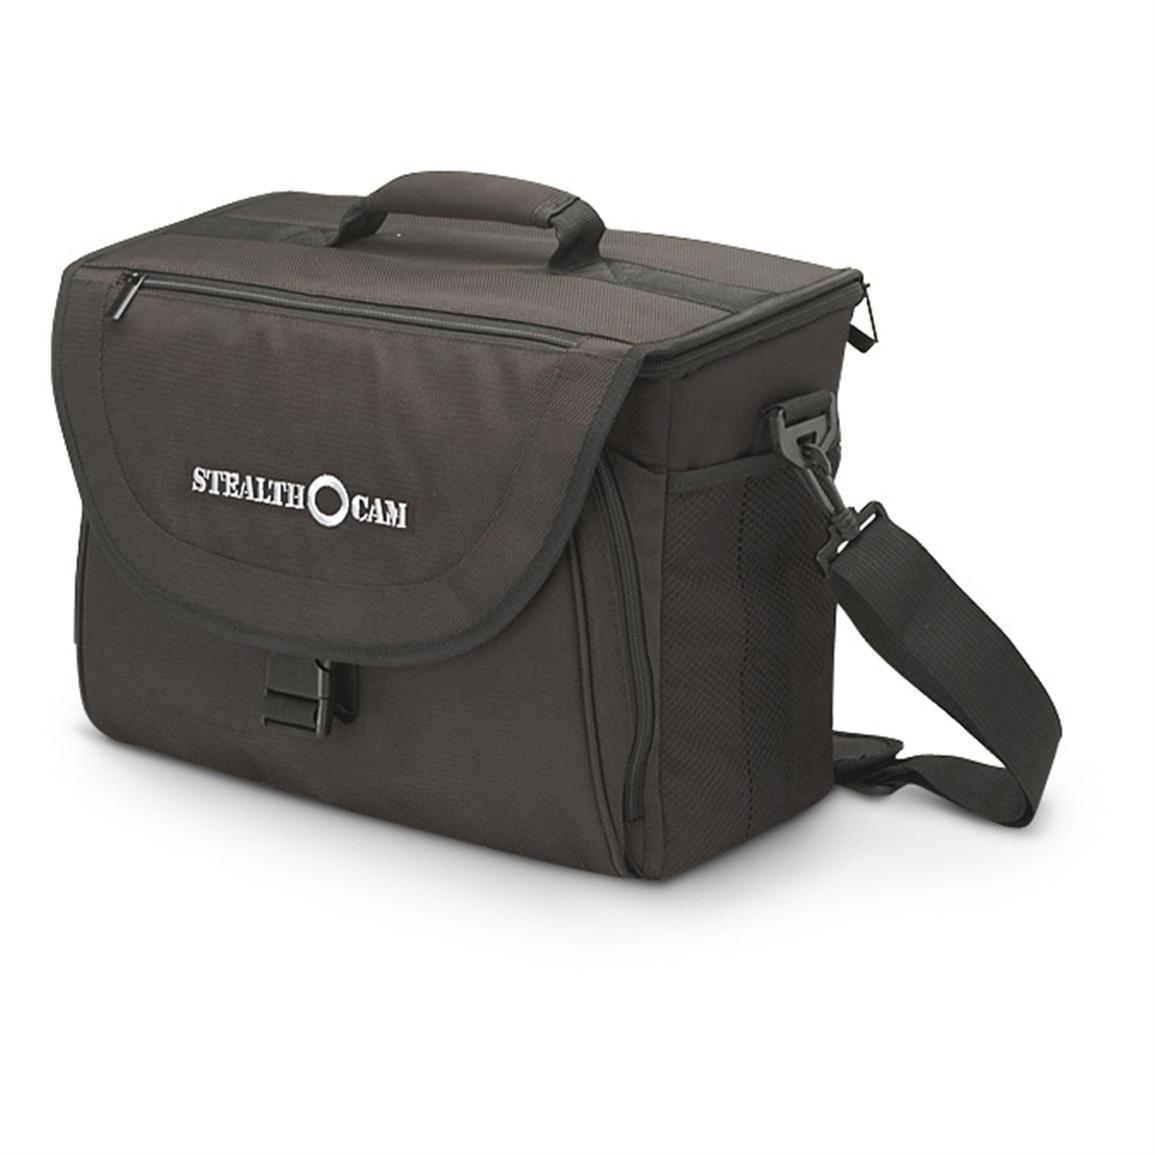 Stealth Cam® Camera Storage Bag, Black - 203797, Game & Trail Cameras ...